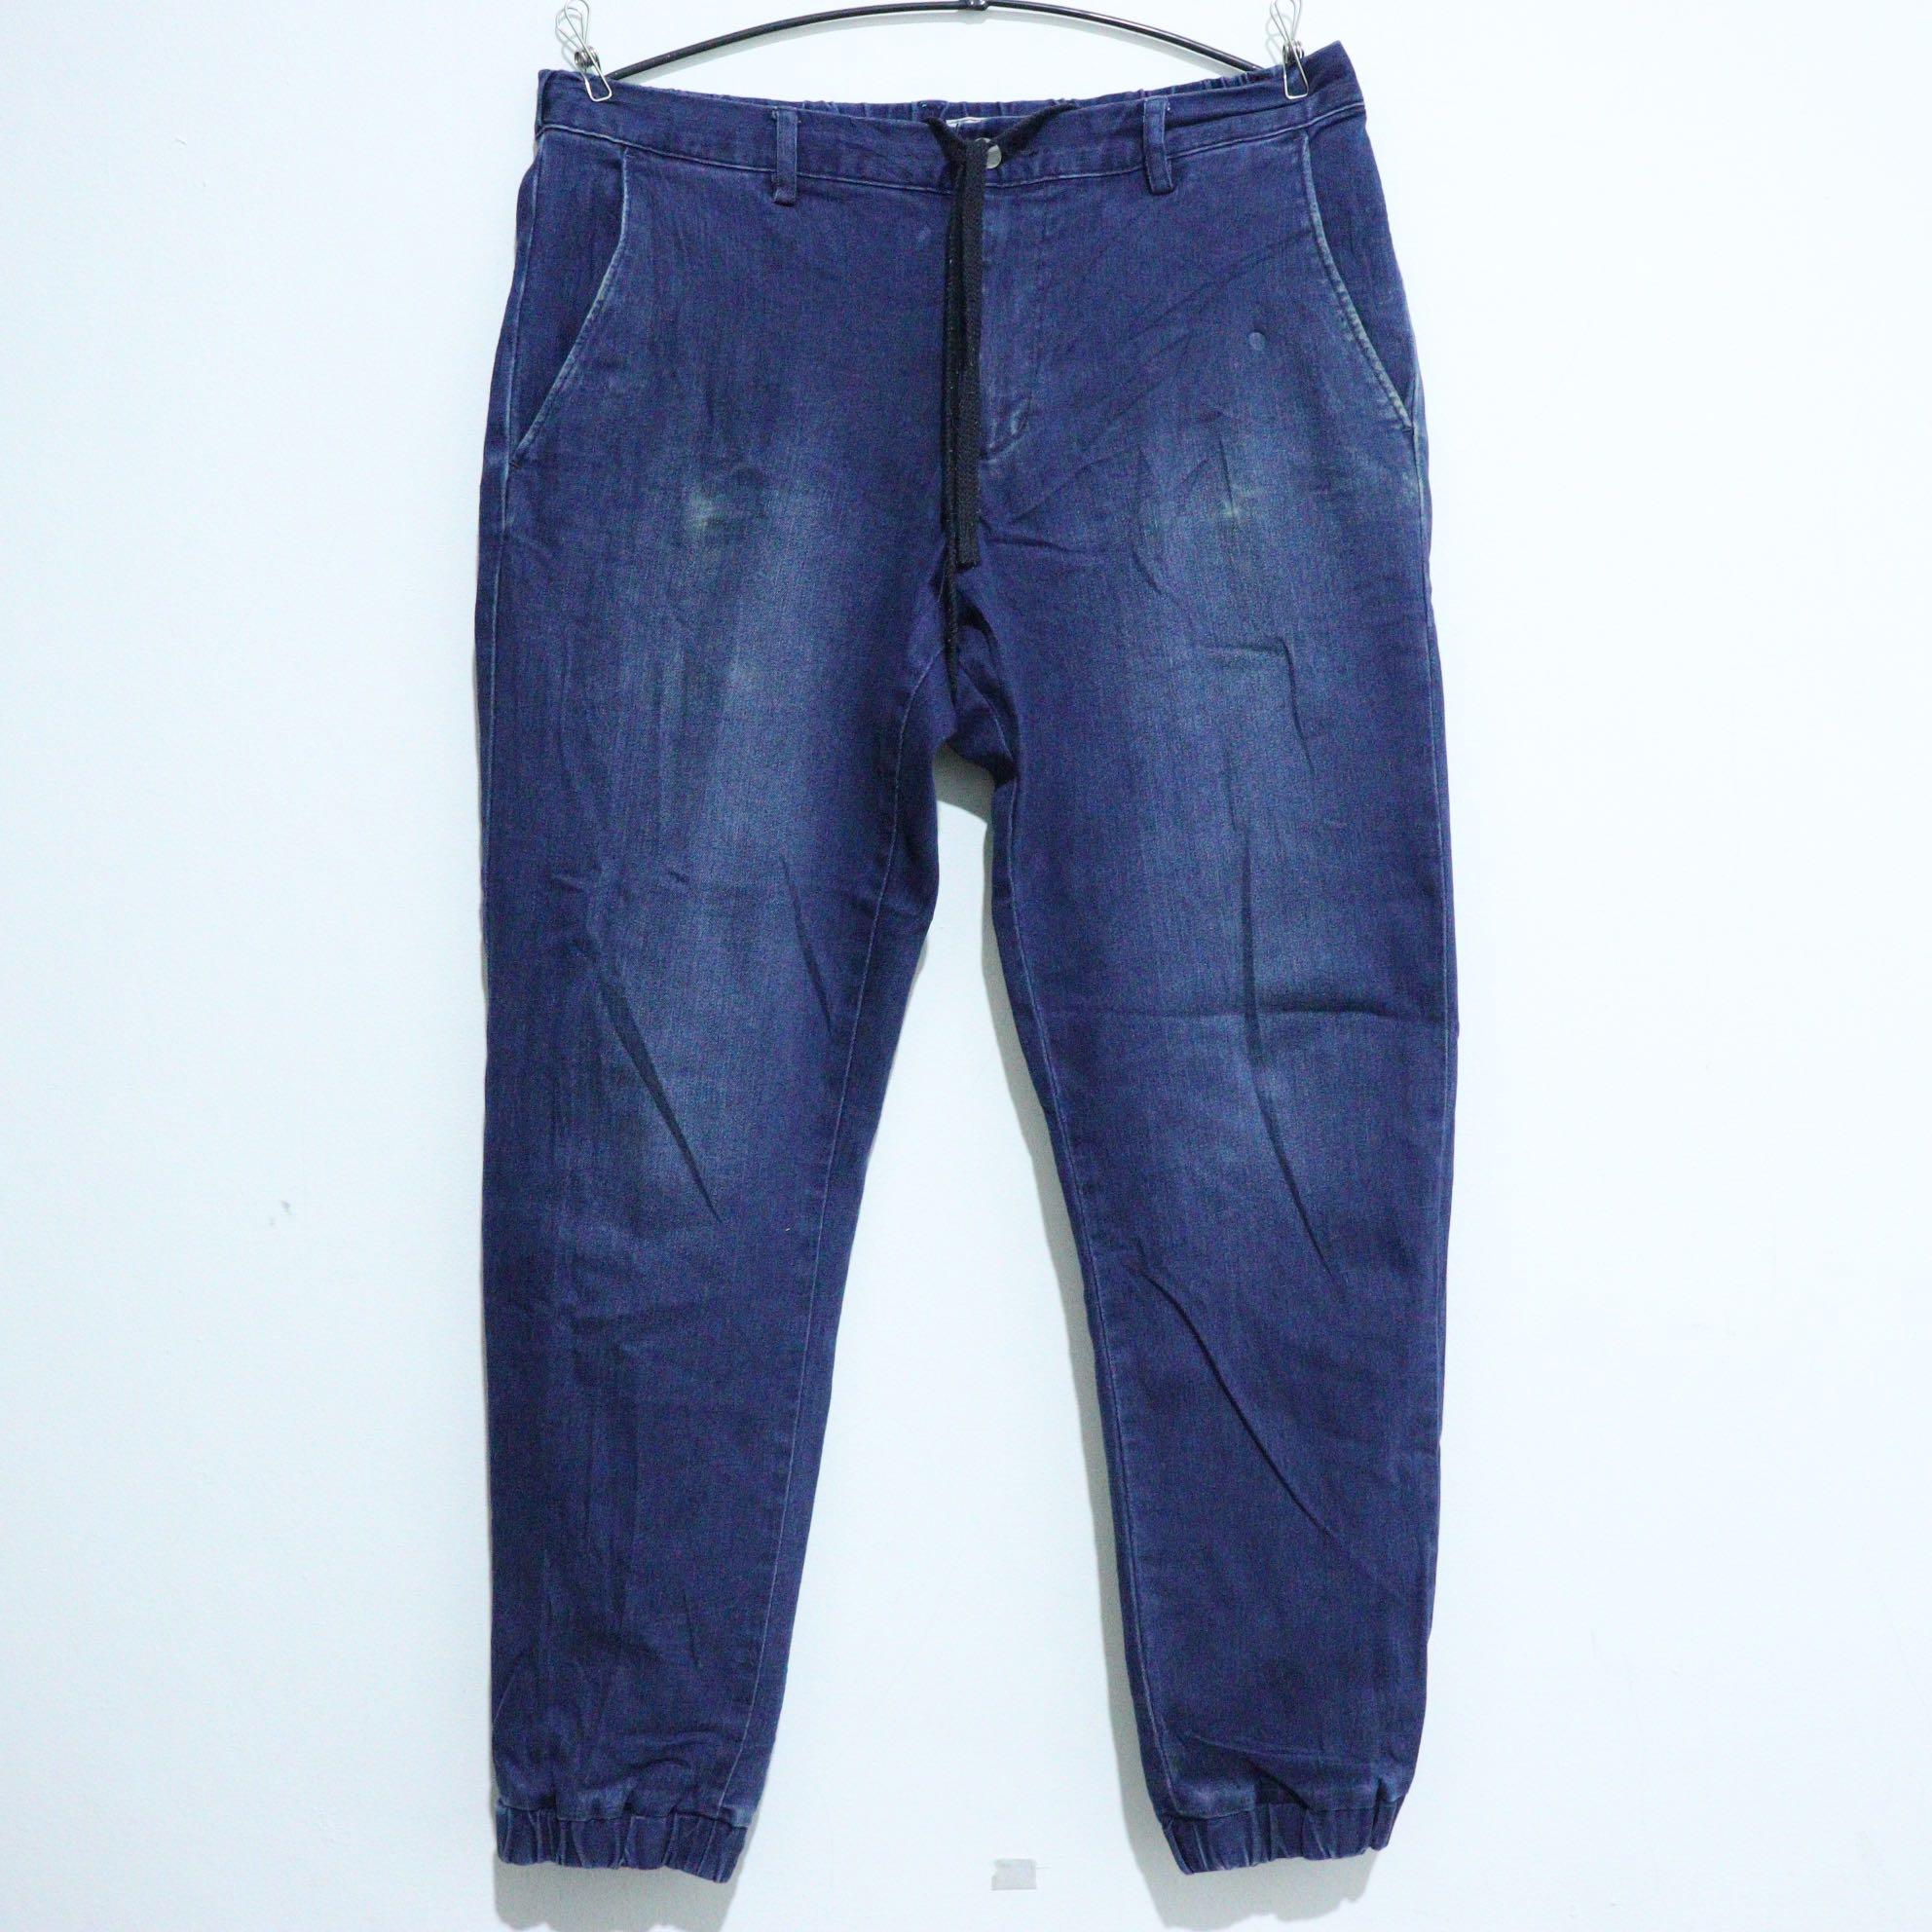 Latest Denim Jeans 2021  Trendy Denim Jogger Pant For Girls